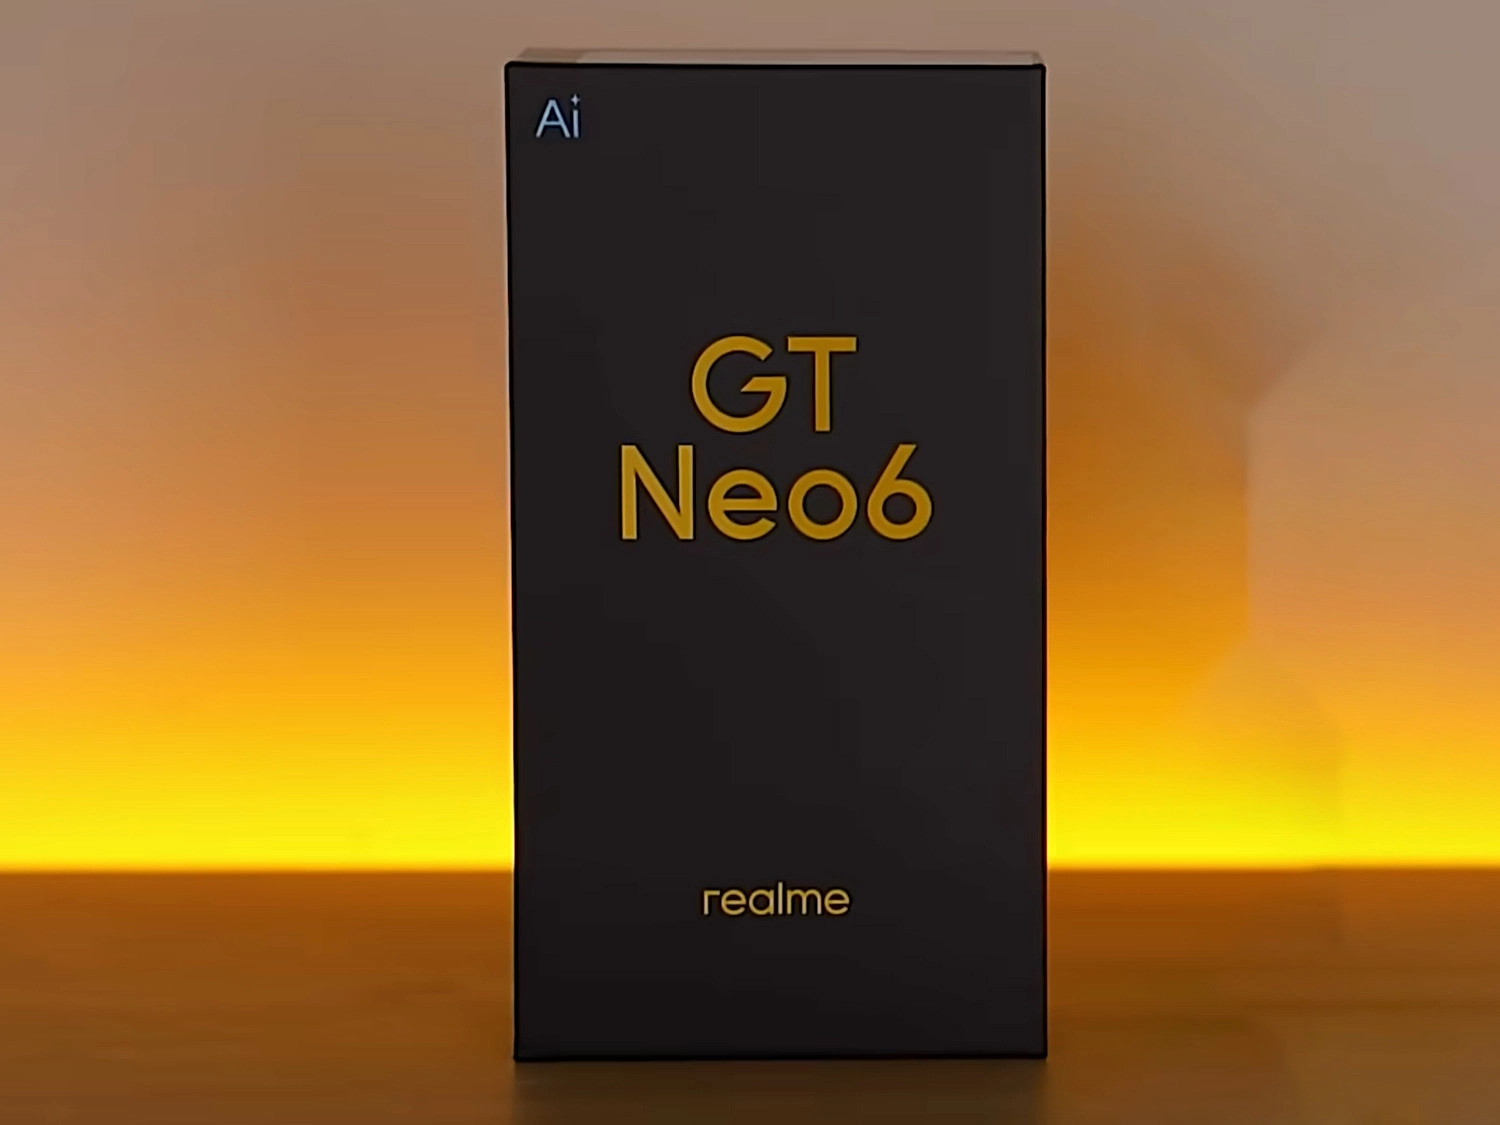 Hộp đựng của Realme GT Neo 6